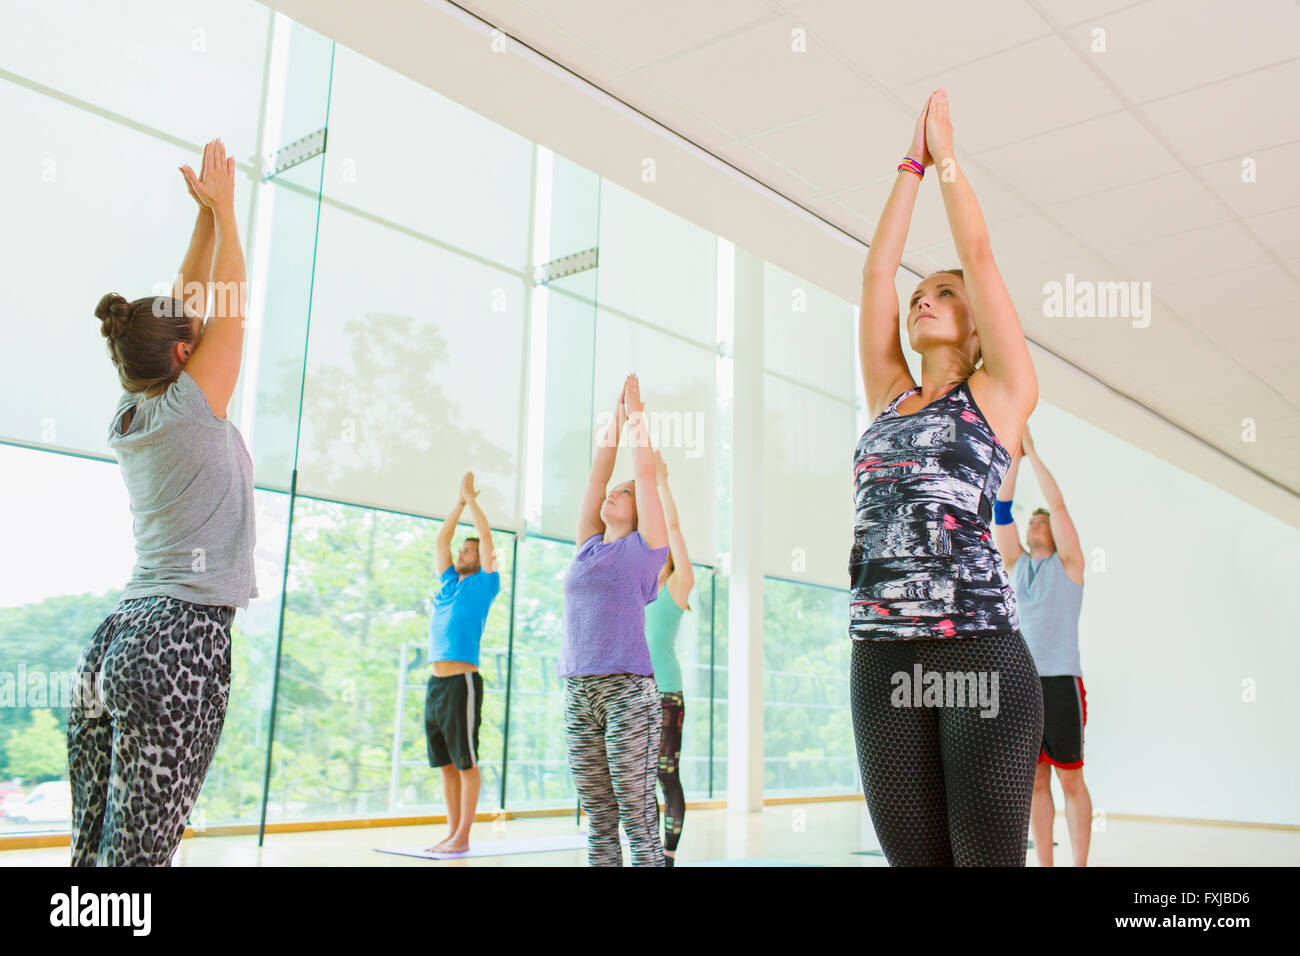 Classe de Yoga with arms raised Banque D'Images